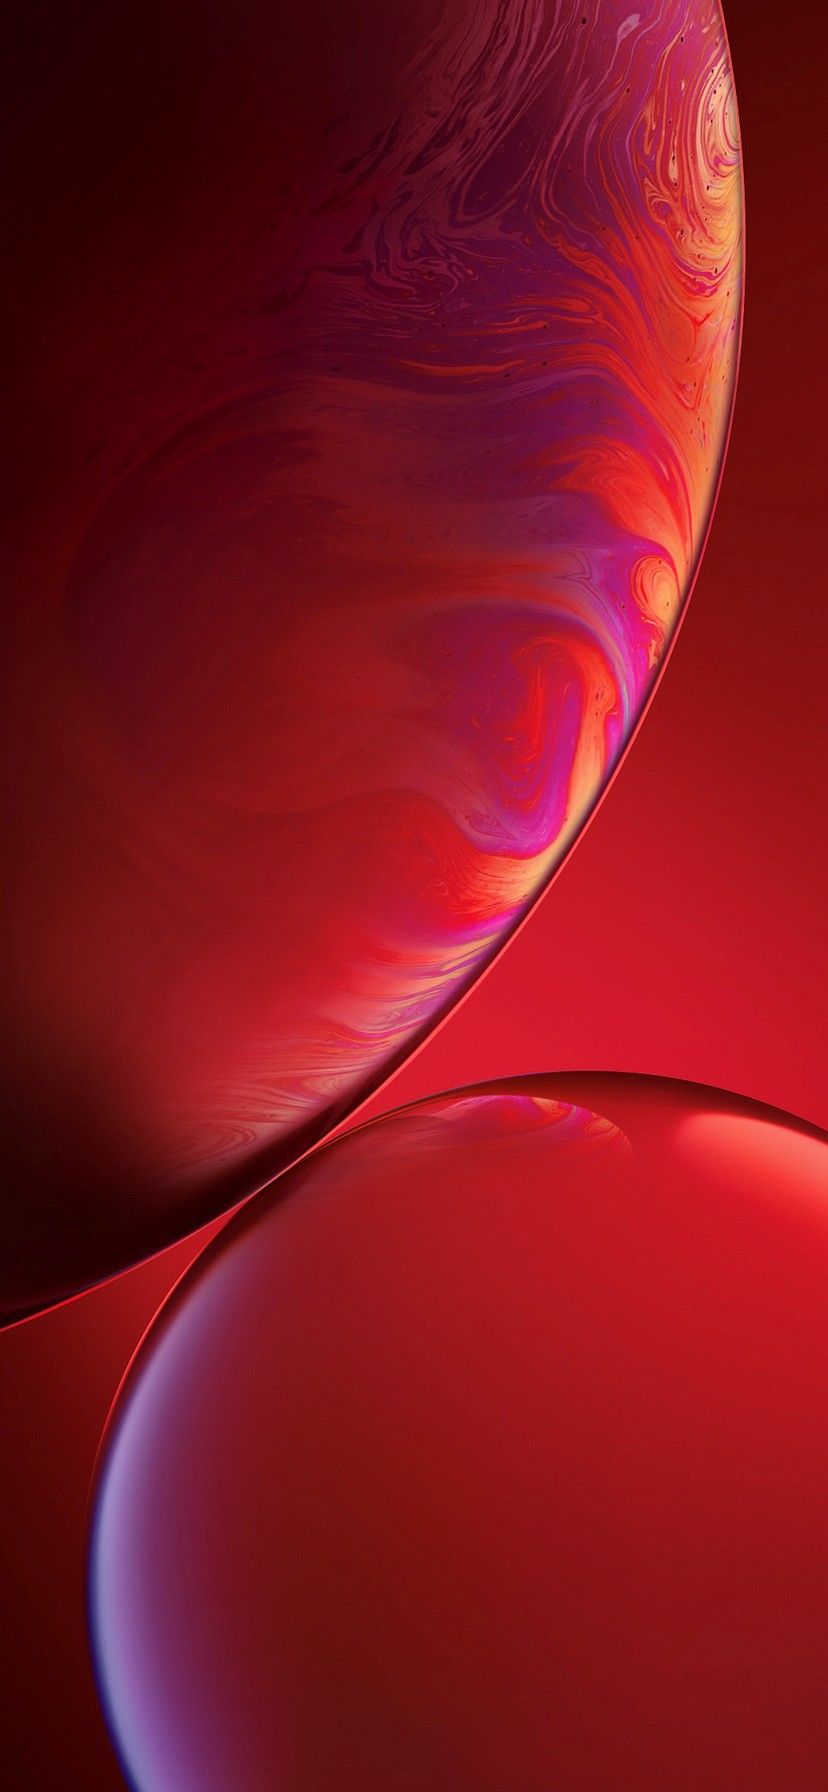 Iphone Xr Red Wallpapers - Top Những Hình Ảnh Đẹp